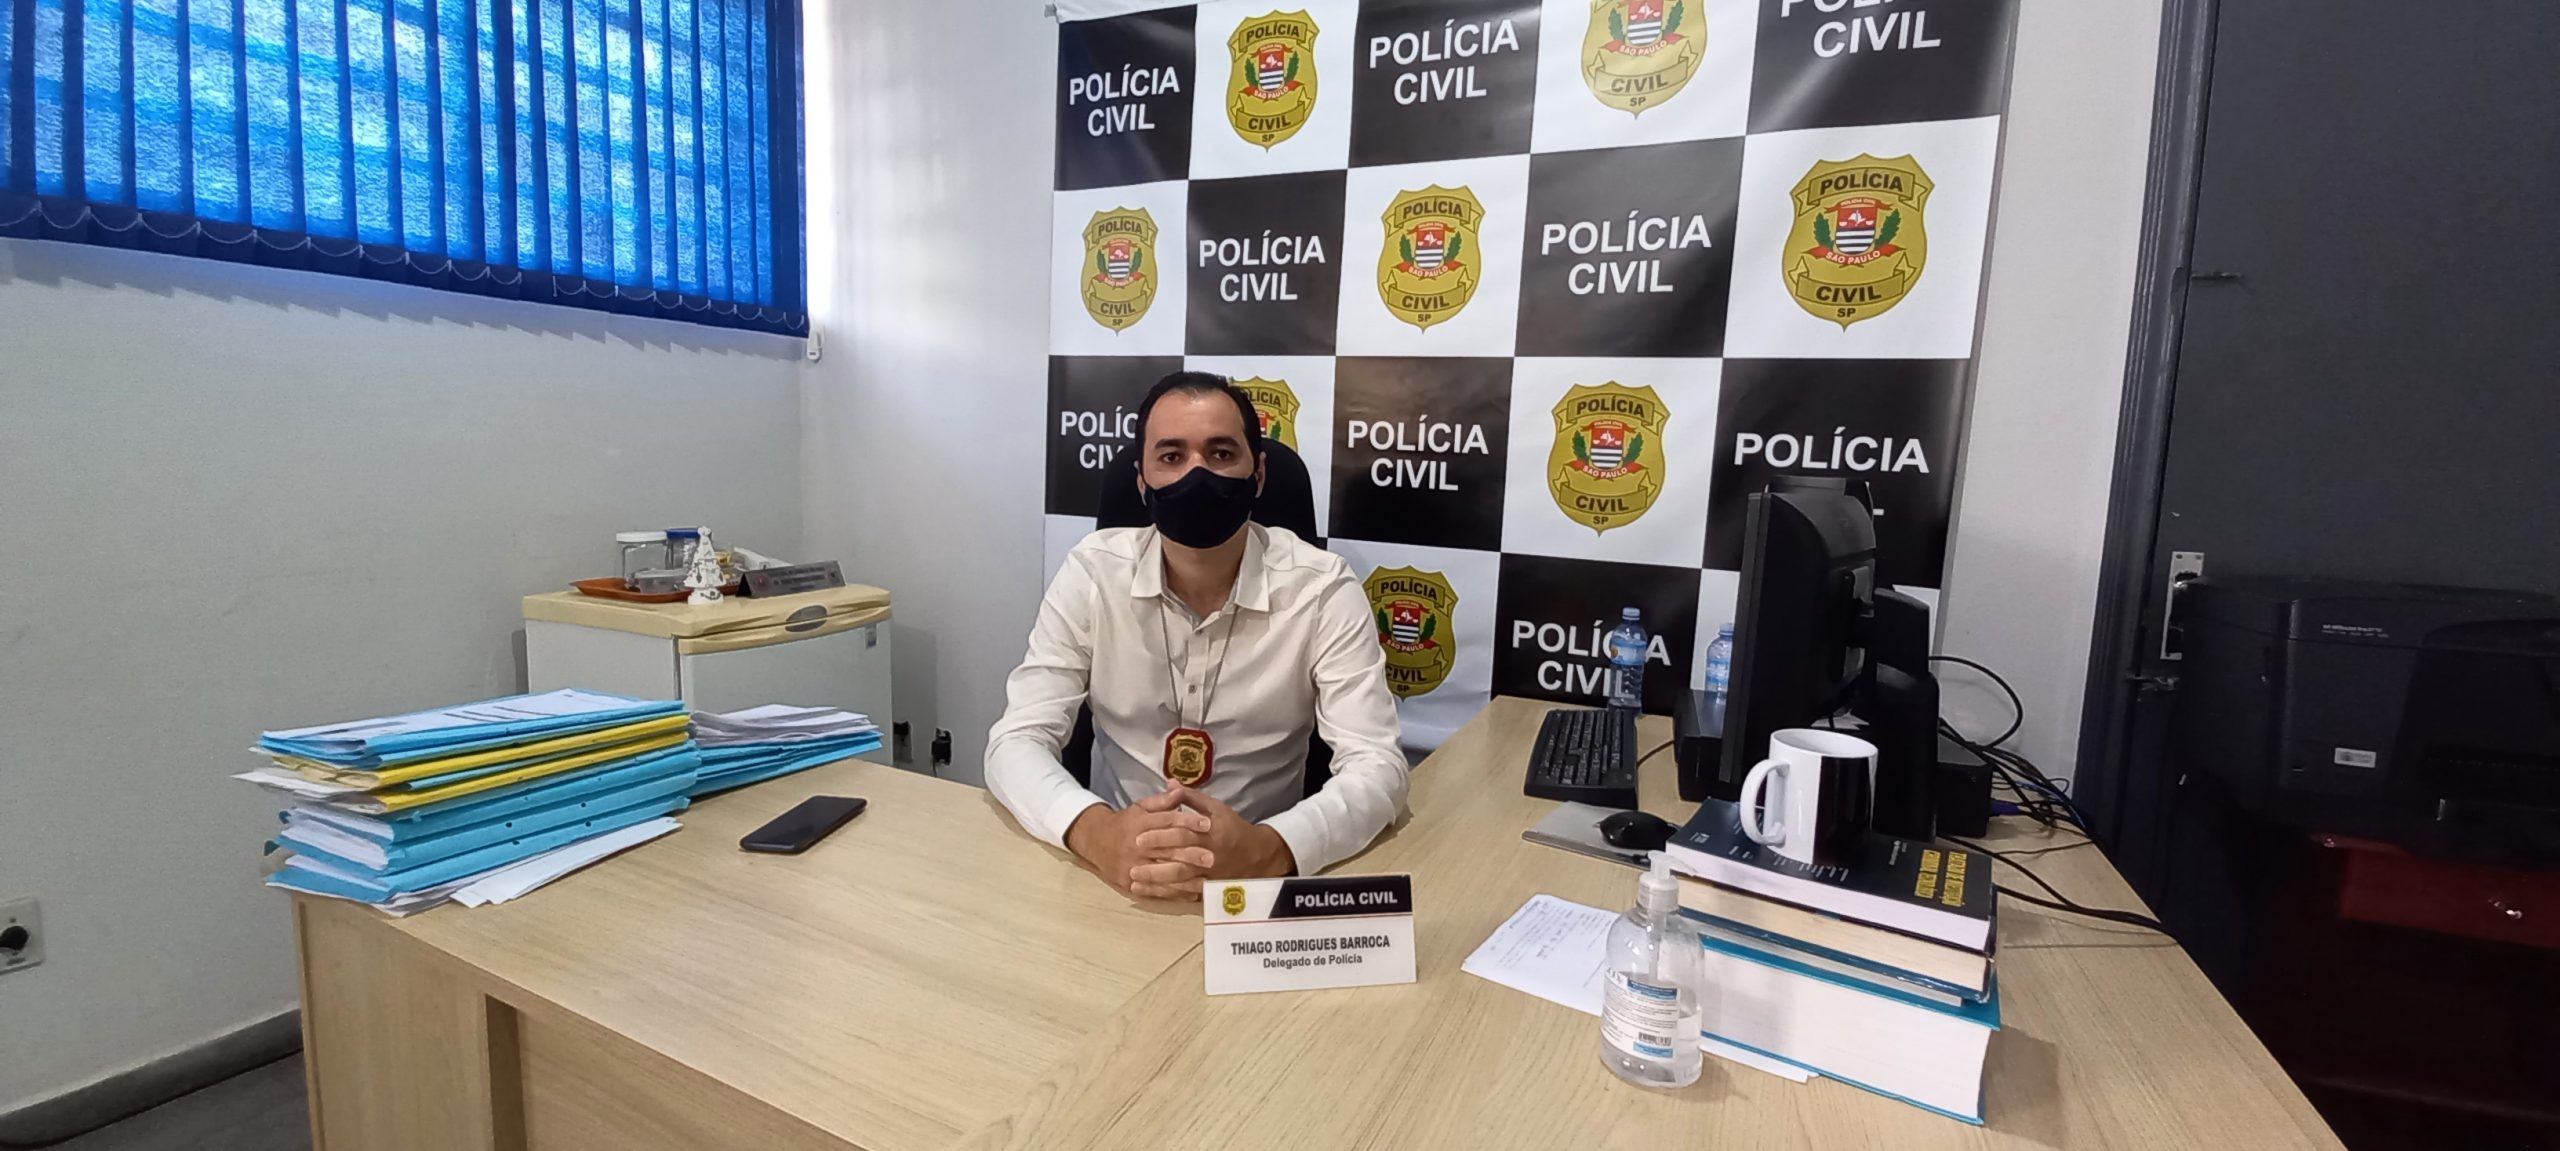 ‘Uma carreira apaixonante porque alia conhecimento jurídico com a parte policial’, conta Thiago Barroca, delegado em Mirandópolis